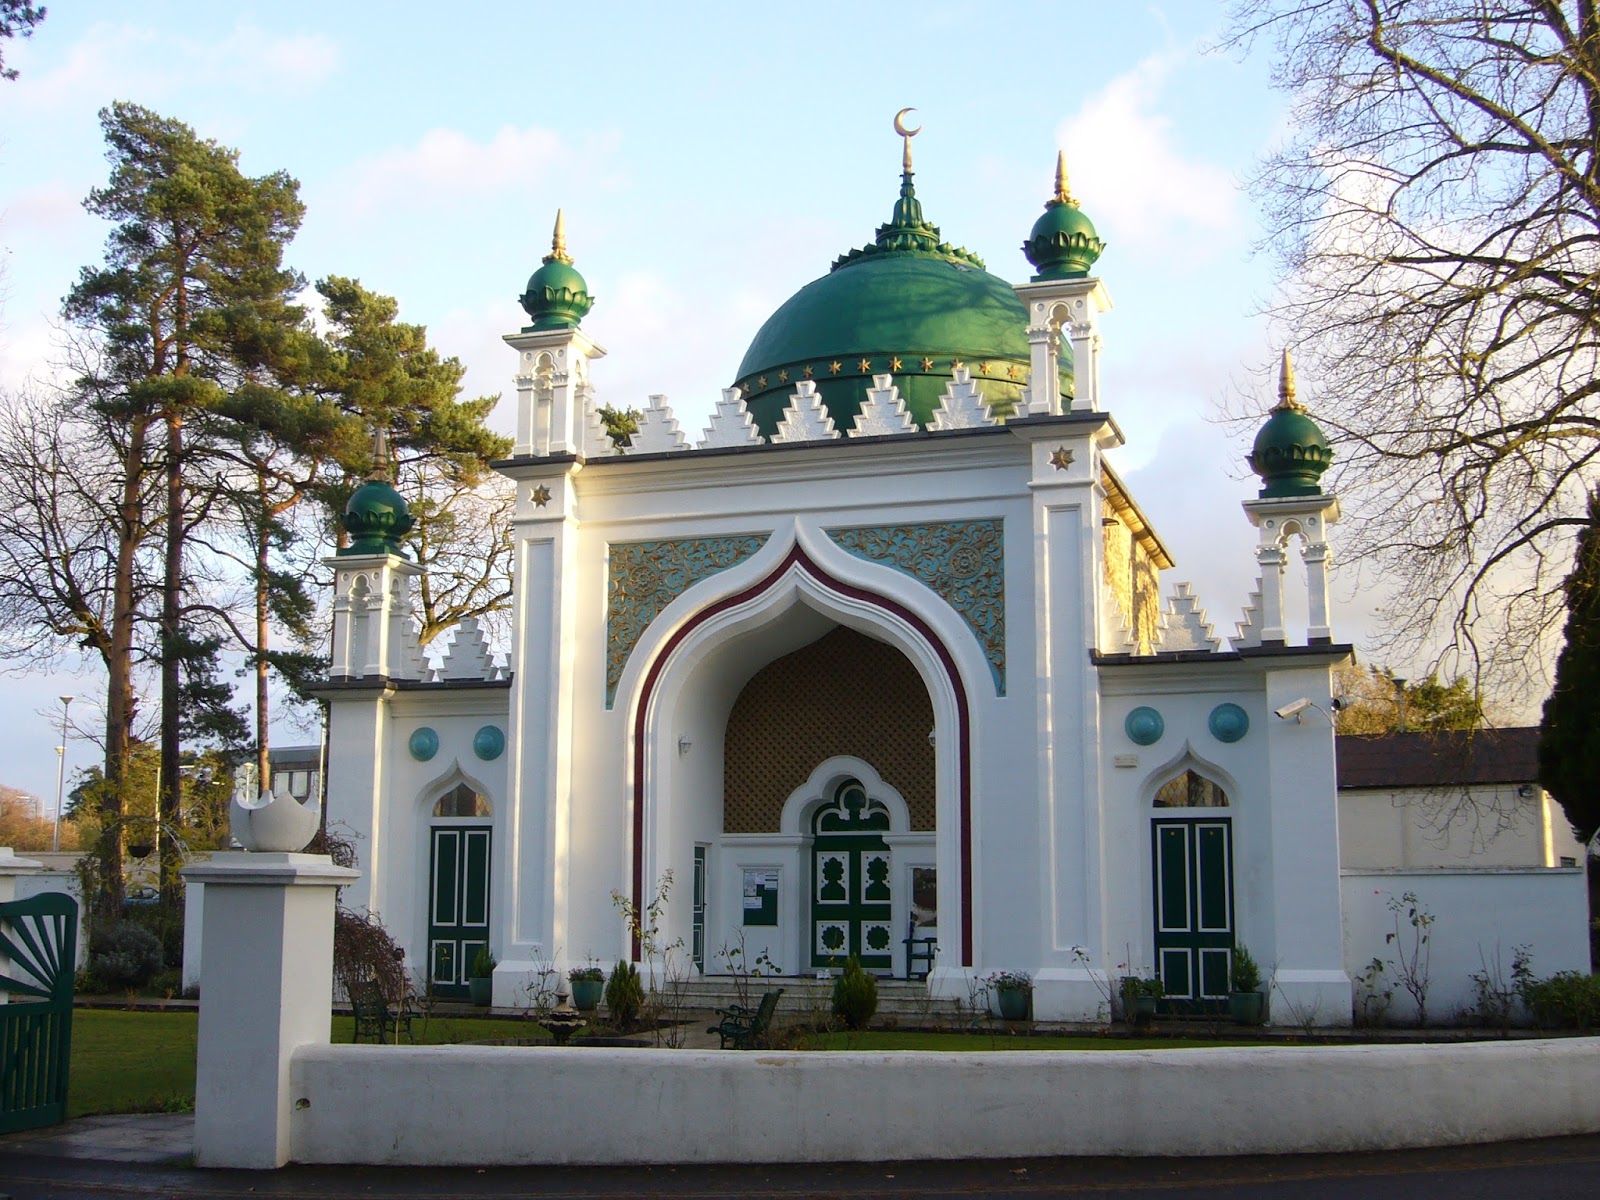  gambar  Gambar  Masjid  Lengkap